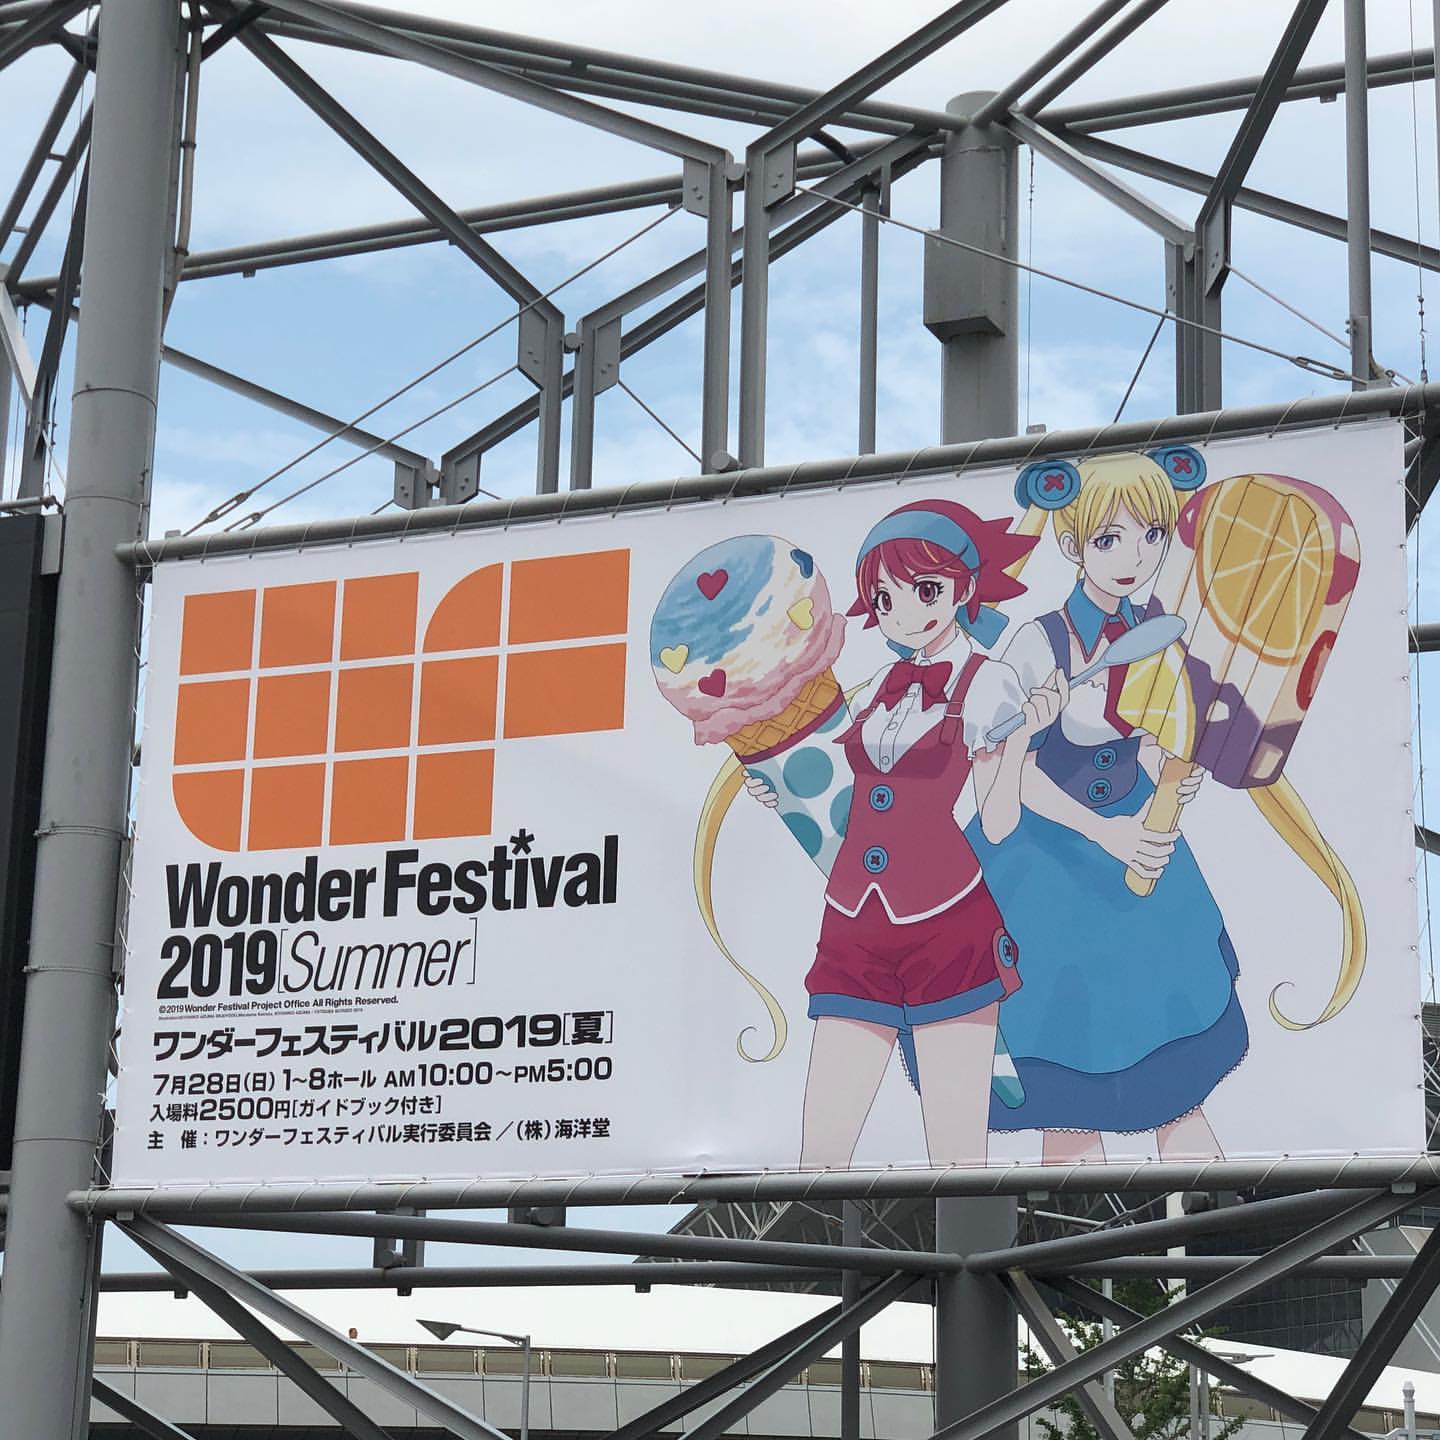 Wonder Festival Summer 2019 Recap